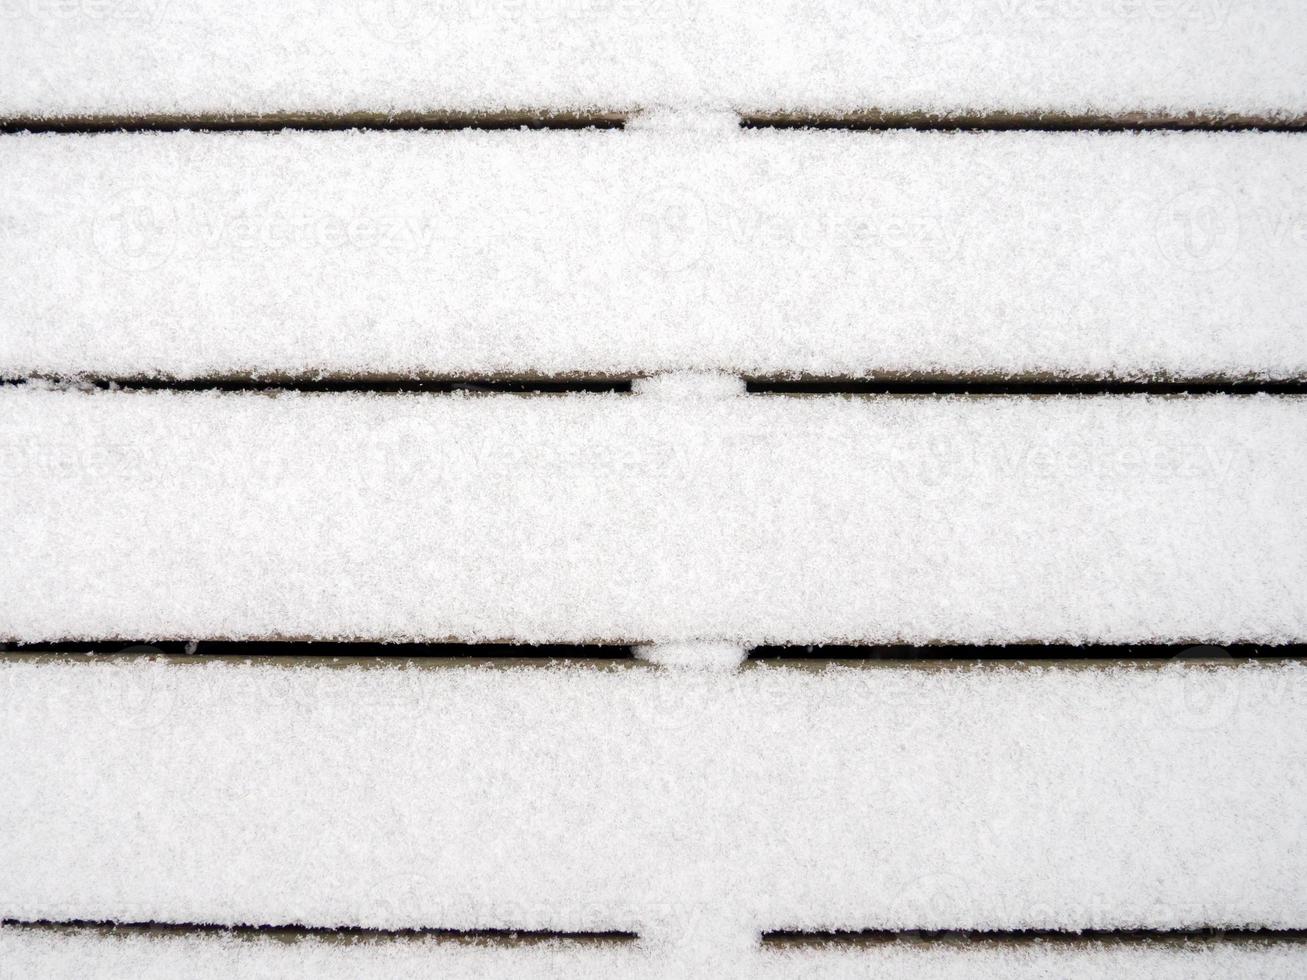 tábuas de madeira cobertas com uma fina camada de primeira neve. Primeira neve. foto